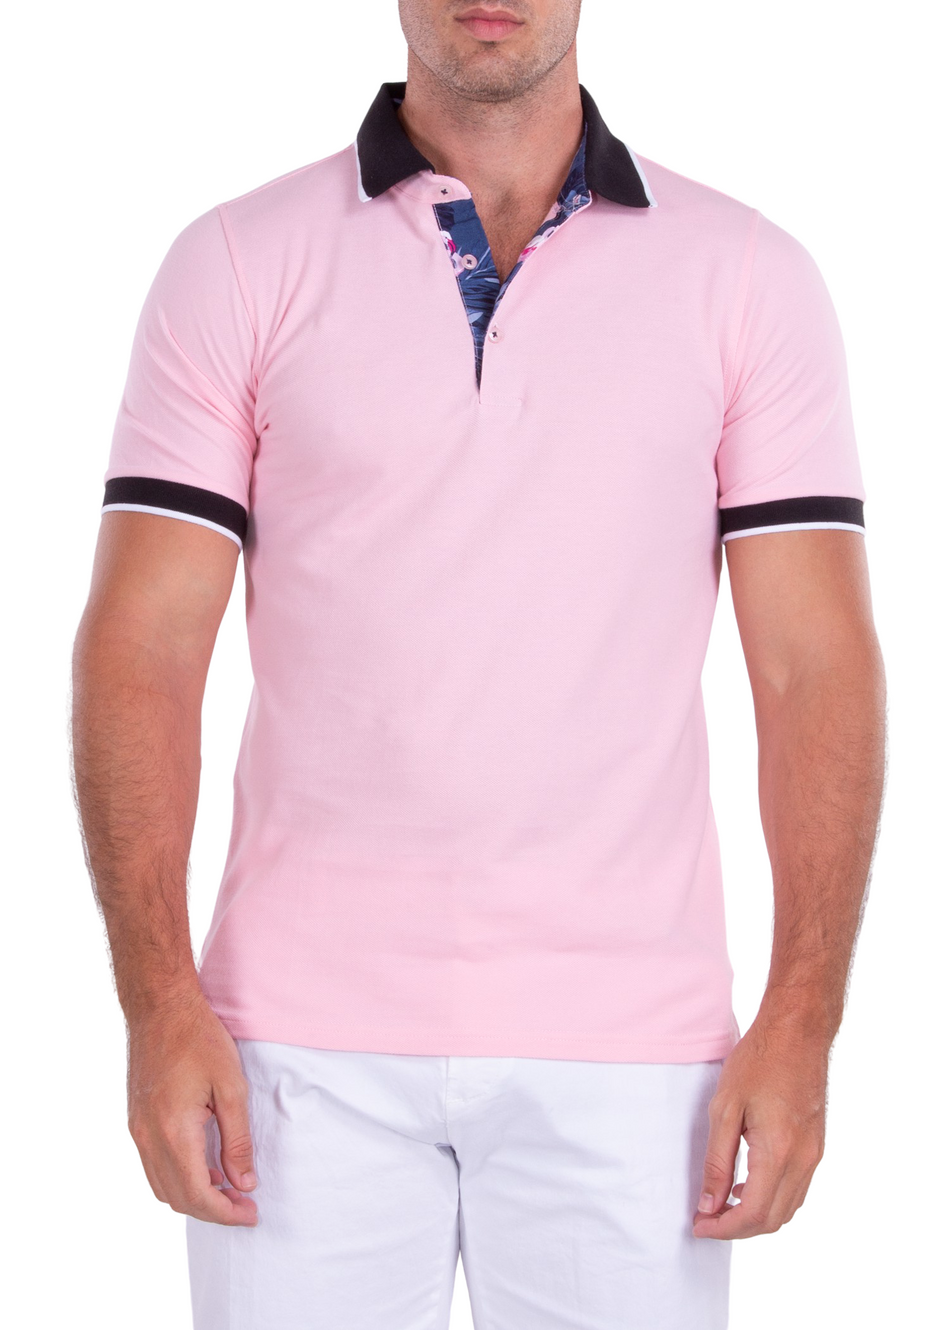 Men's Essentials Pink Short Sleeve Polo Shirt